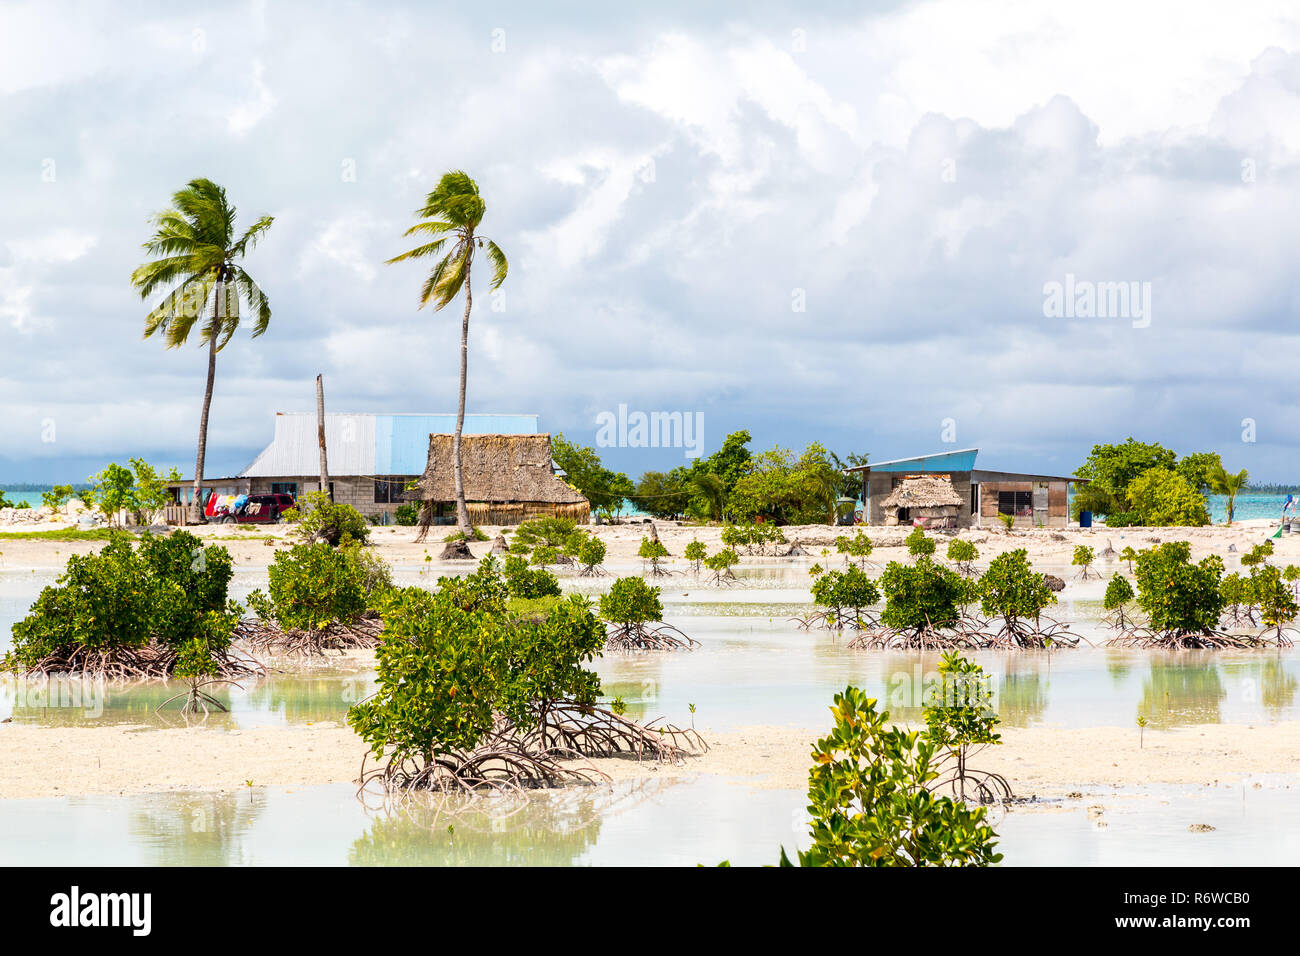 Dorf auf South Tarawa Atolls, Kiribati, Mikronesien, Ozeanien. Reetgedeckte Häuser. Das ländliche Leben auf einem sandigen Strand von fernen Paradies Insel unter Palmen. Stockfoto